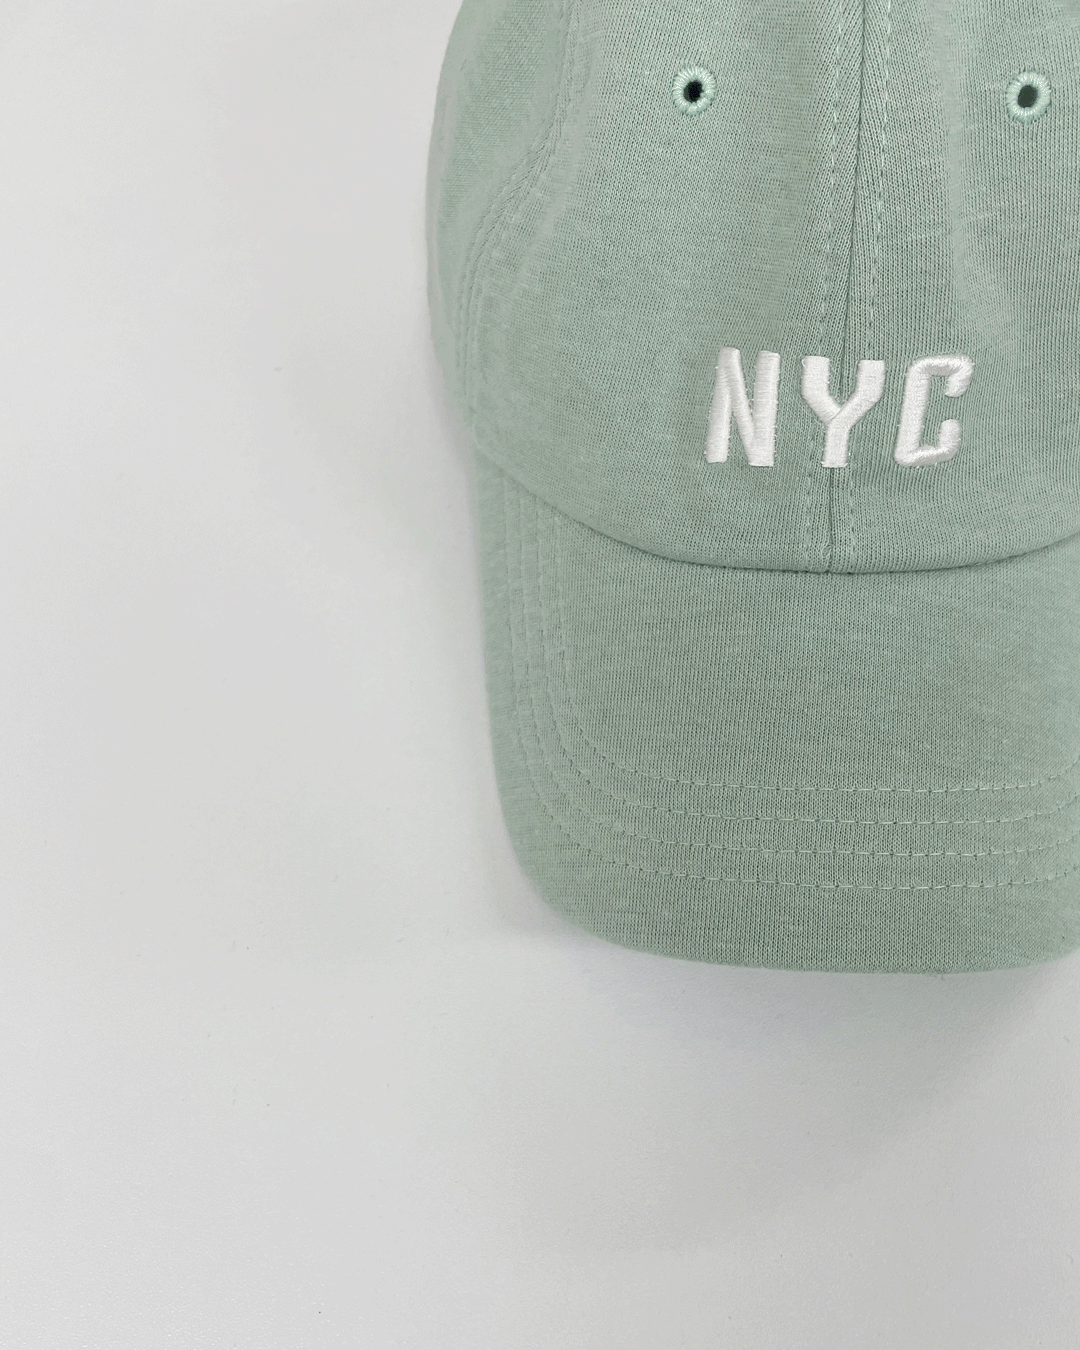 NYC cap